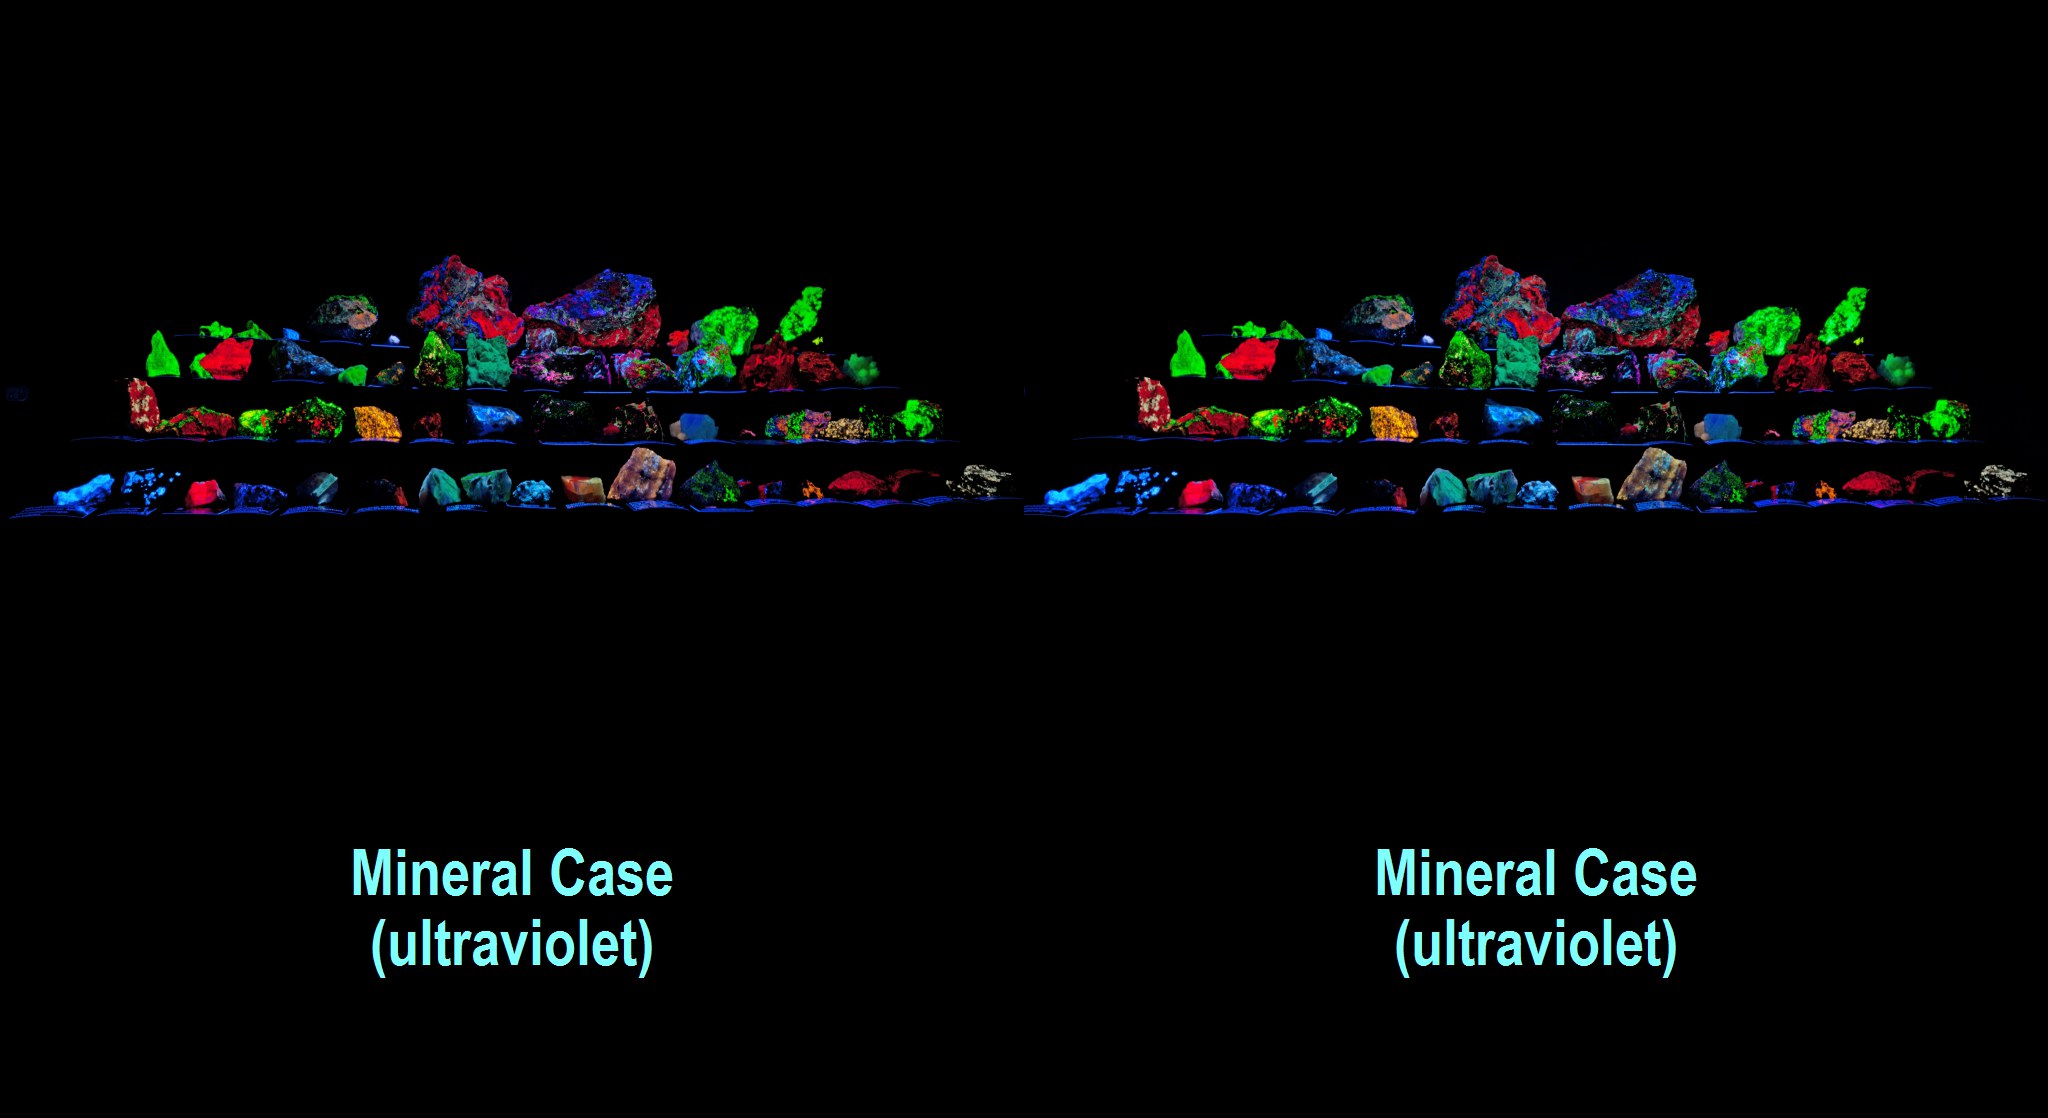 Mineral case (ultraviolet)